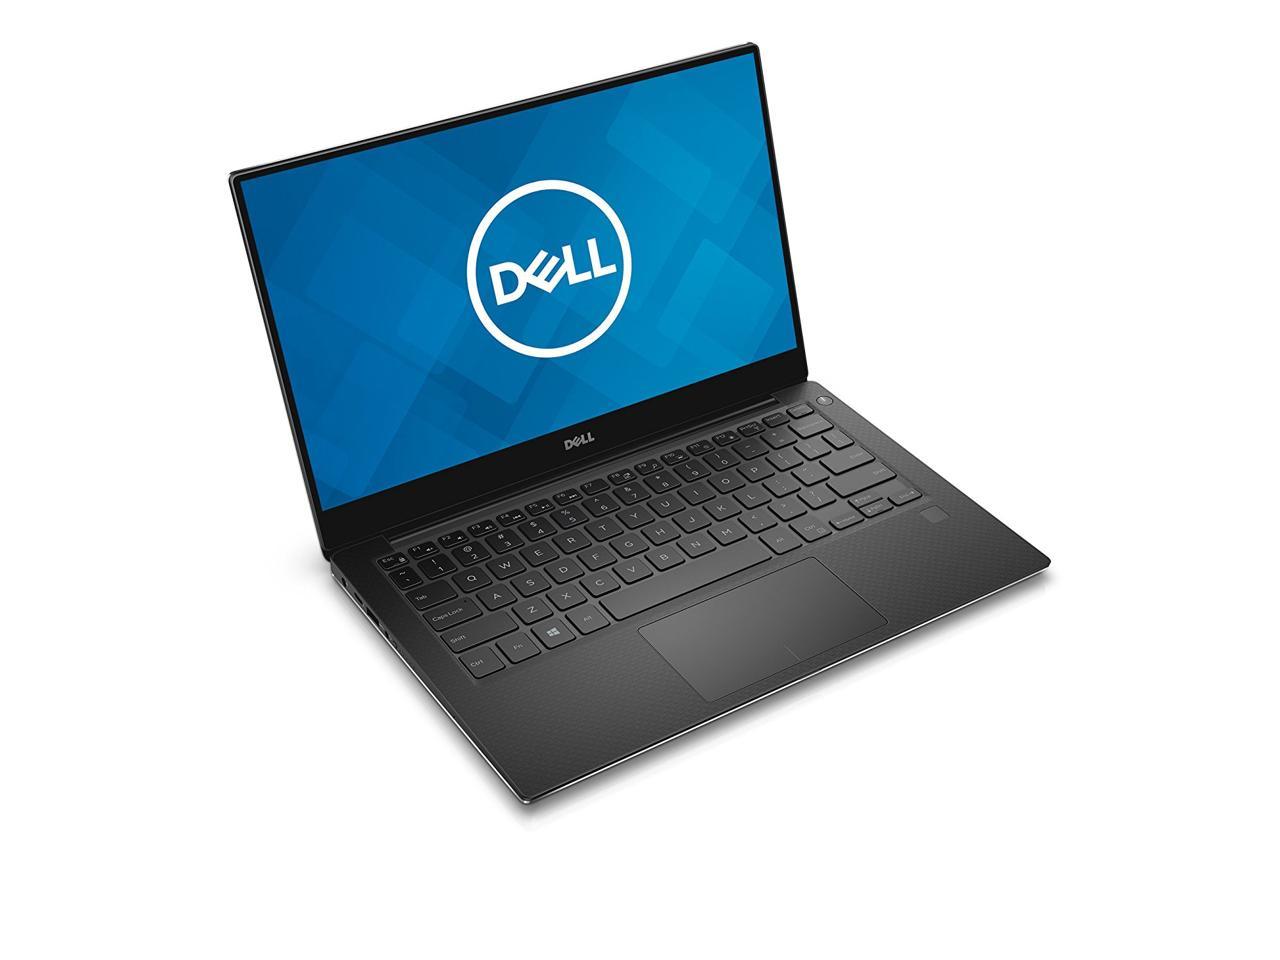 Dell XPS 13 9360 Ultrabook: Core i5-8250U, 128GB SSD, 8GB RAM, 13.3